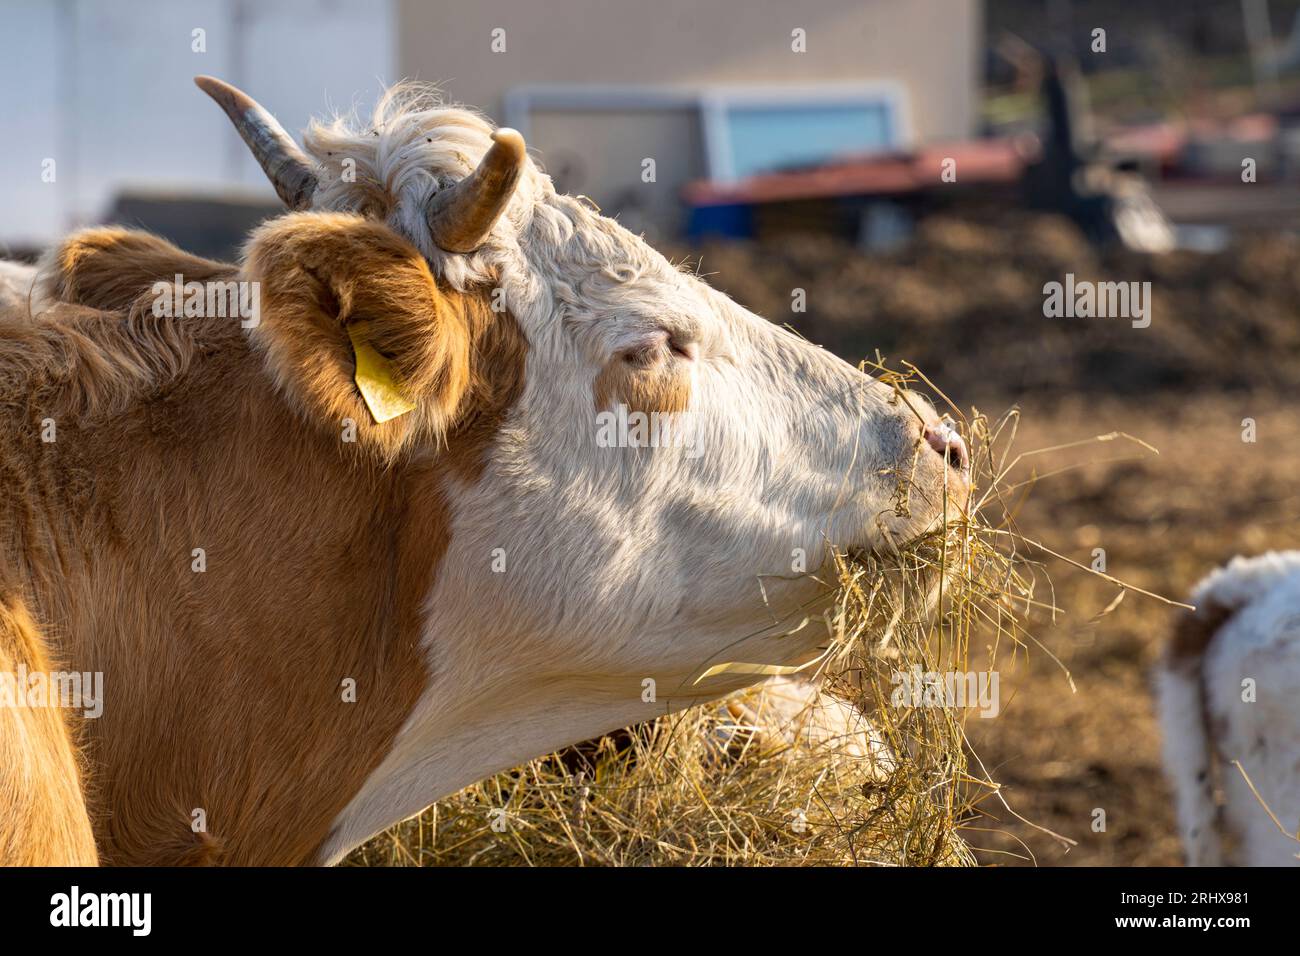 Vache (Bos Taurus) aux cheveux bruns et blancs mangeant du foin Banque D'Images